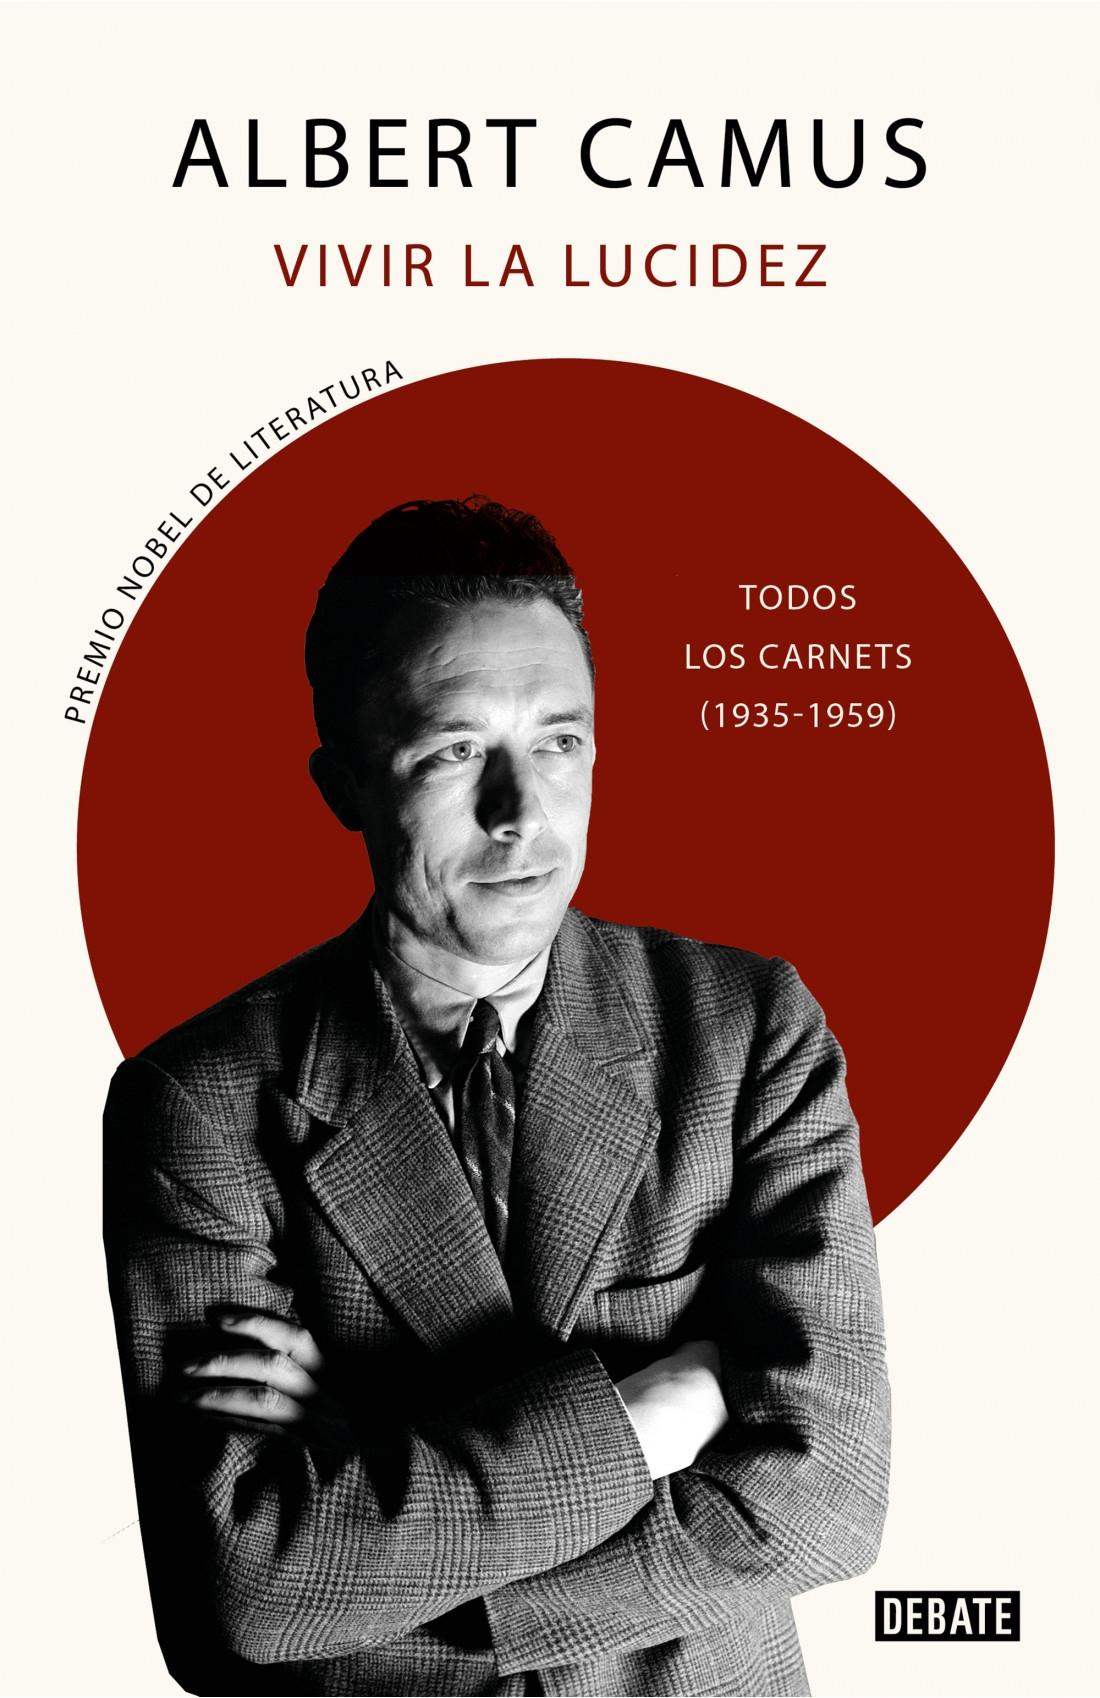 VIVIR LA LUCIDEZ "TODOS LOS CARNETS (1935-1959)". 